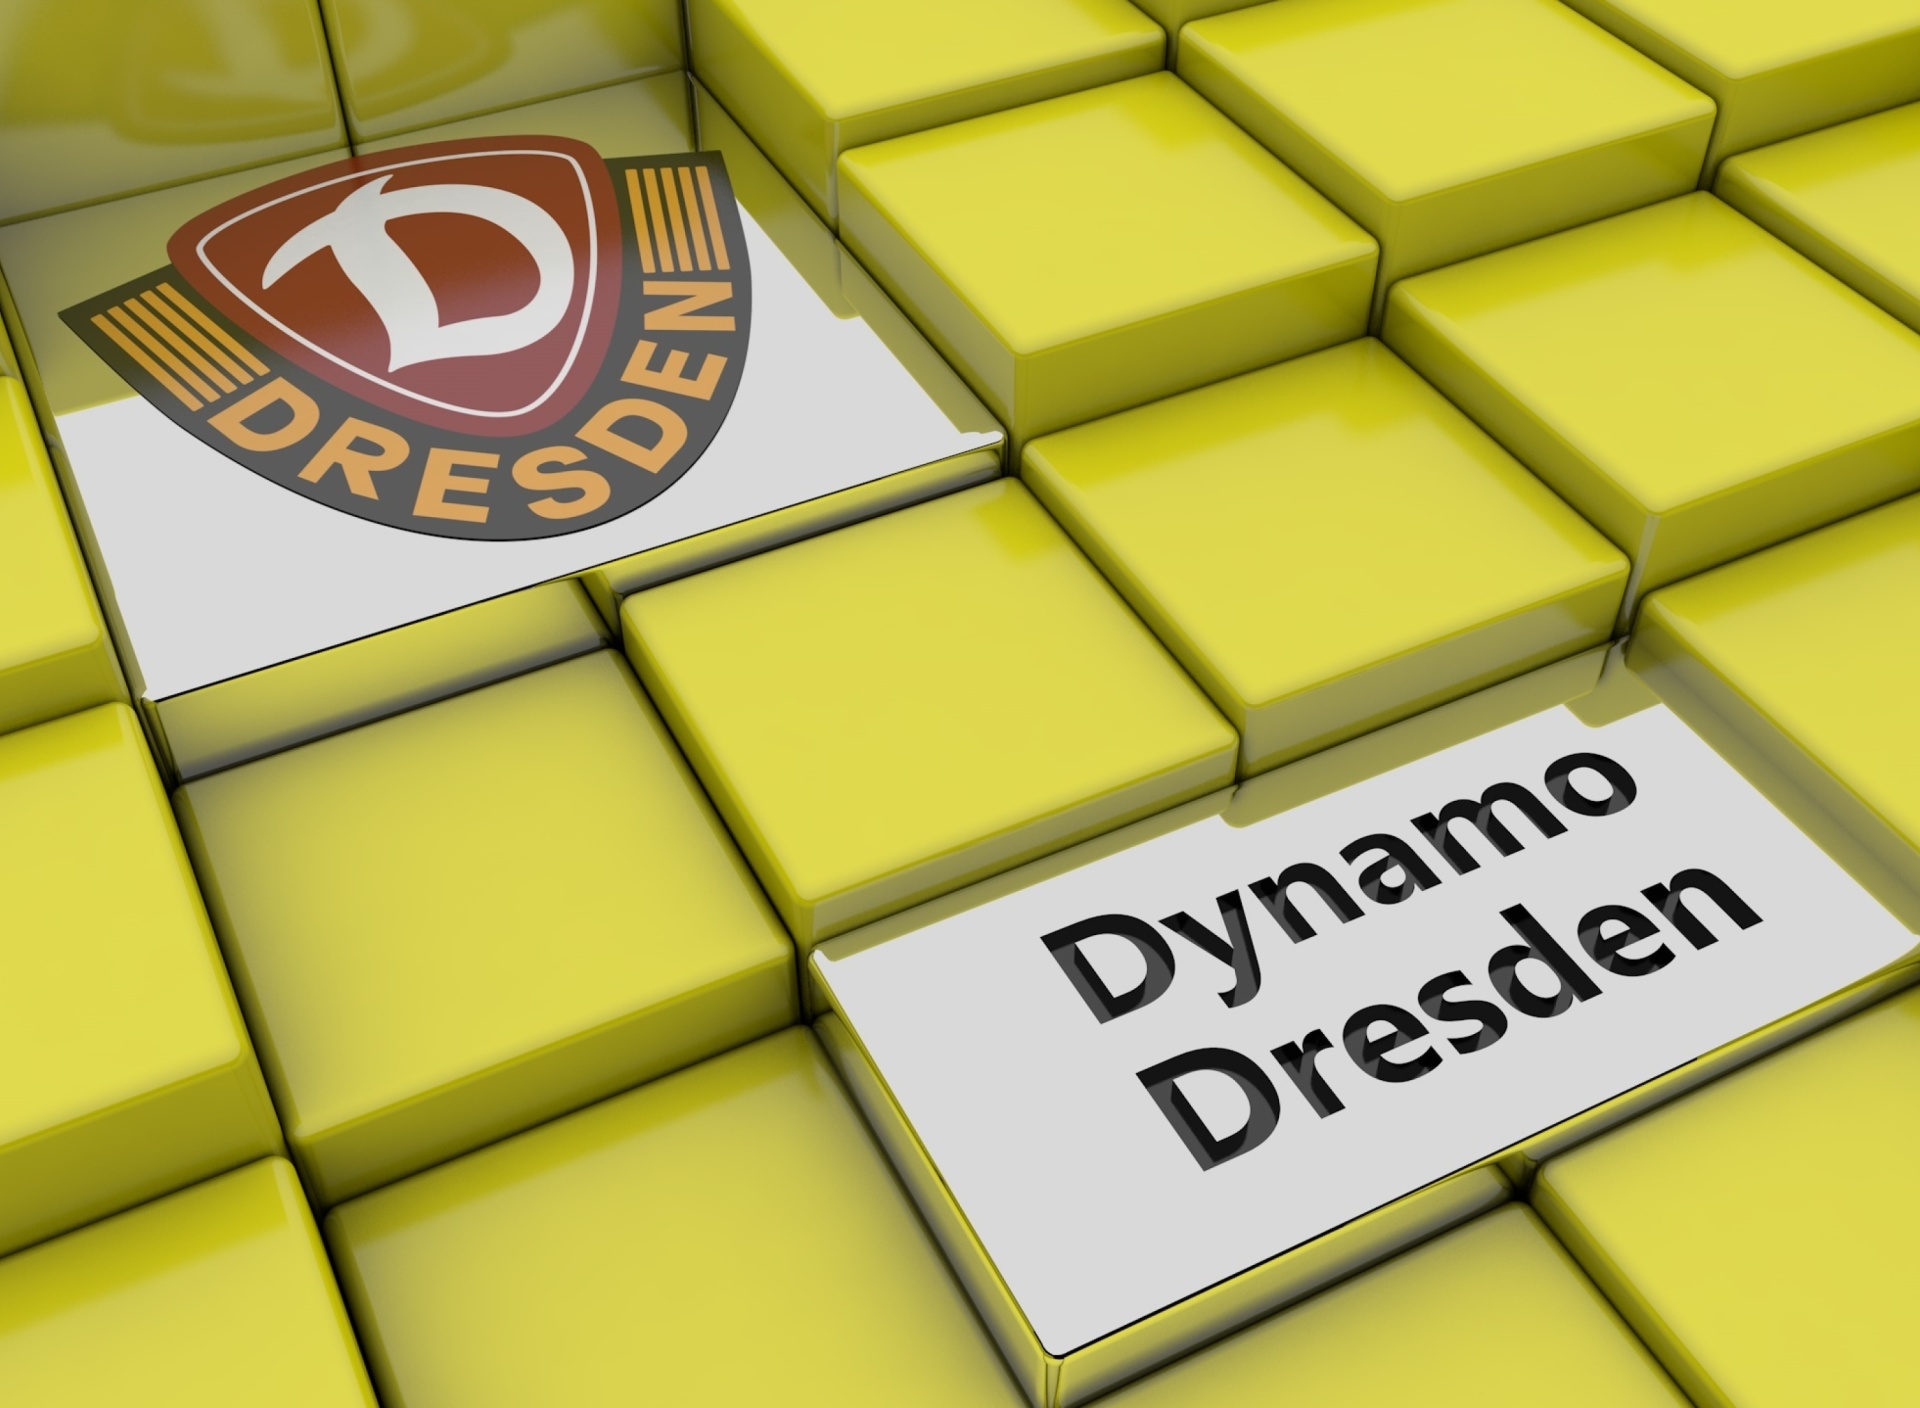 Обои Dynamo Dresden 1920x1408